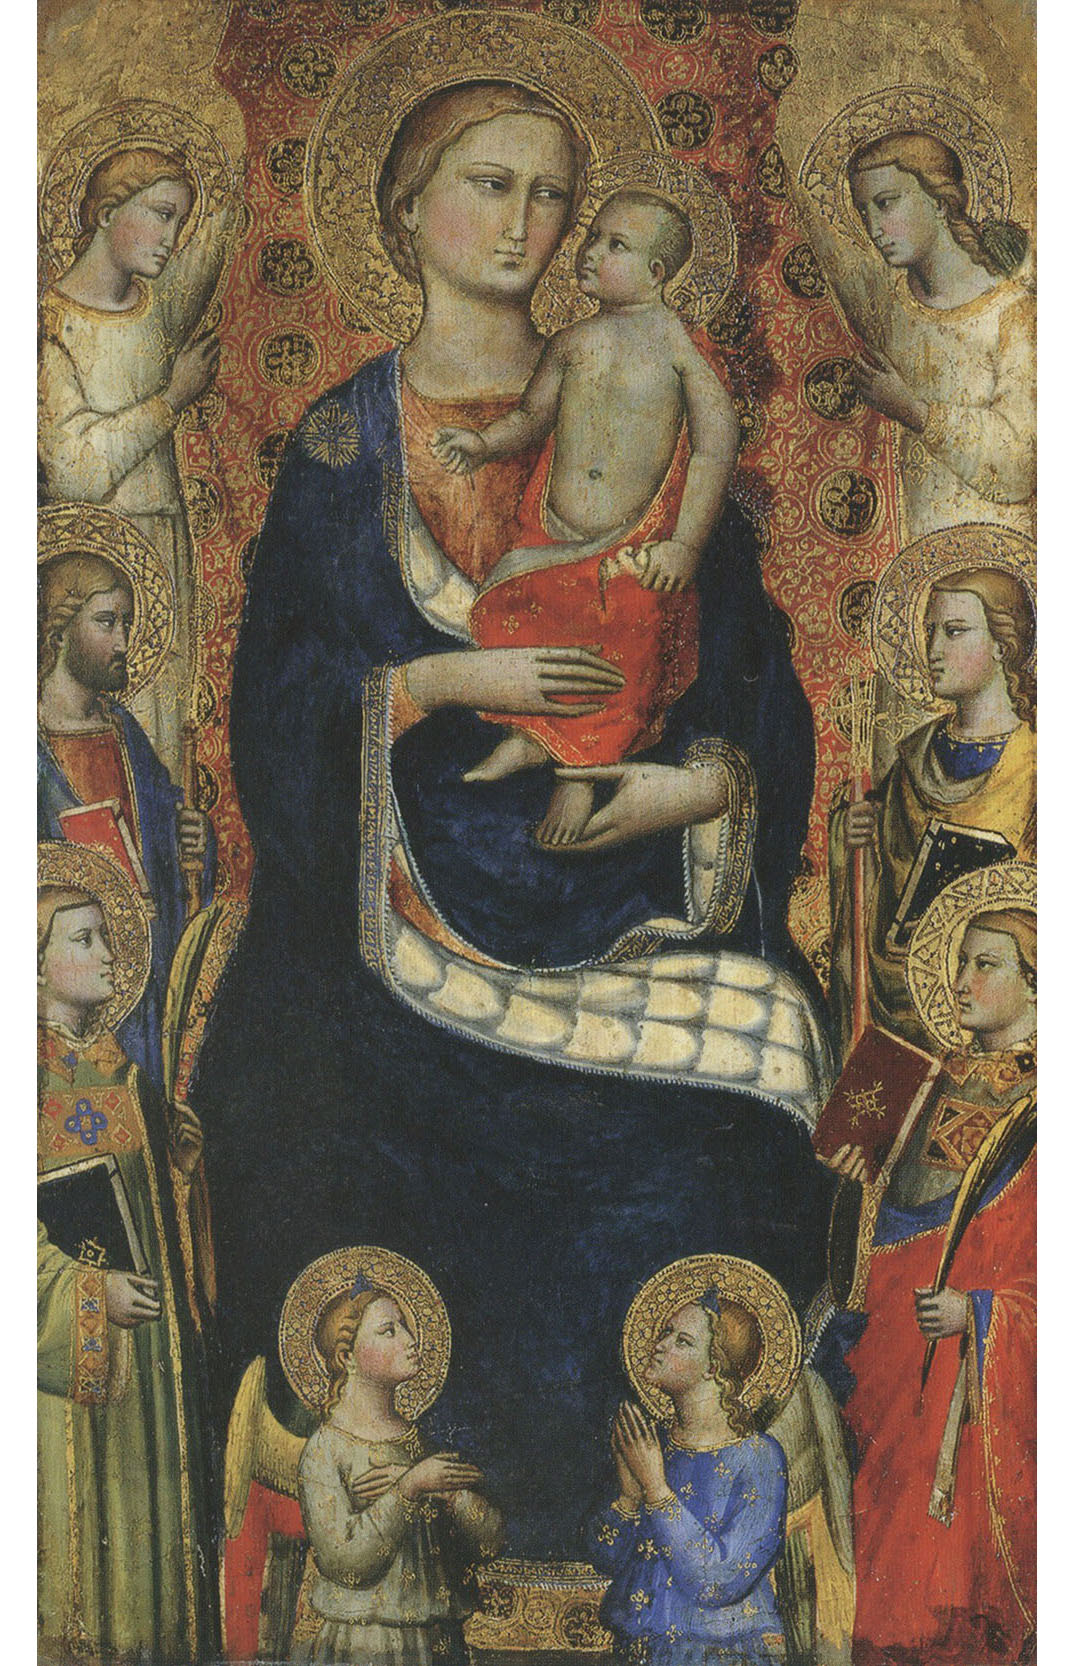 Мастер цеха шерстянщиков. Работал в конце XIV - начала XV века во Флоренции. "Мадонна с Младенцем, четырьмя святыми и четырьмя ангелами".